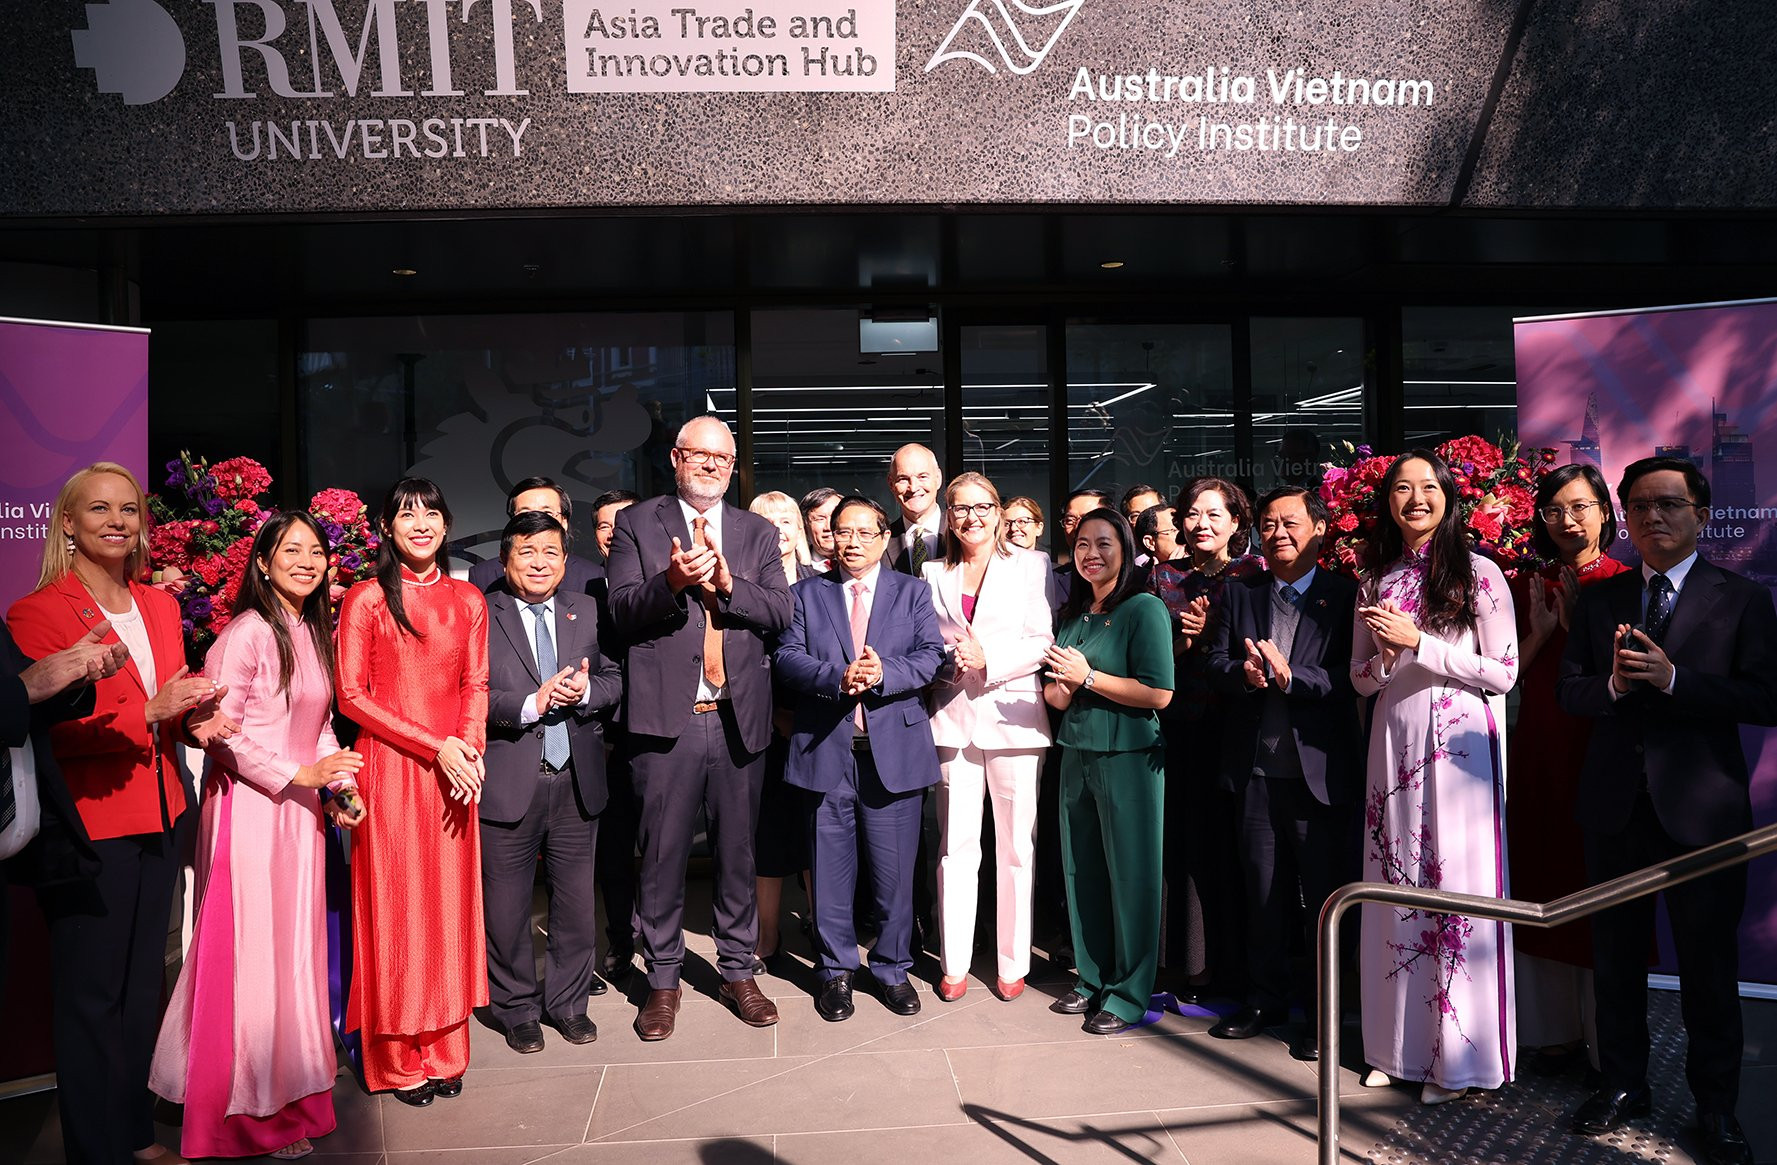 Thủ tướng dự lễ và cắt băng khai trương Viện Chính sách Australia – Việt Nam tại Đại học RMIT, thành phố Melbourne, bang Victoria - Ảnh: VGP/Nhật Bắc